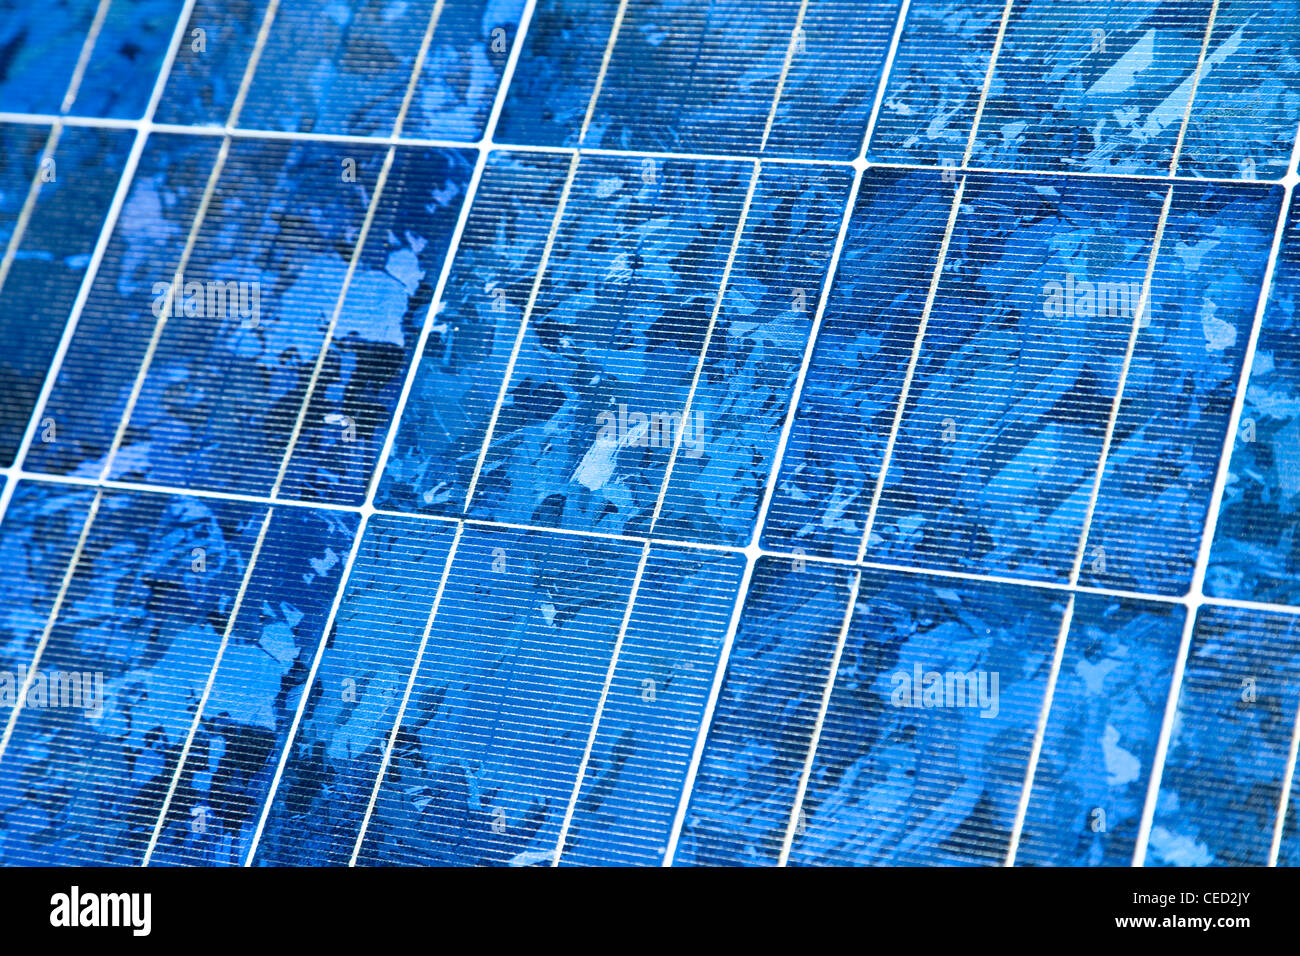 Panneau solaire, close-up - Photovoltaik, Nahaufnahme Modul Banque D'Images